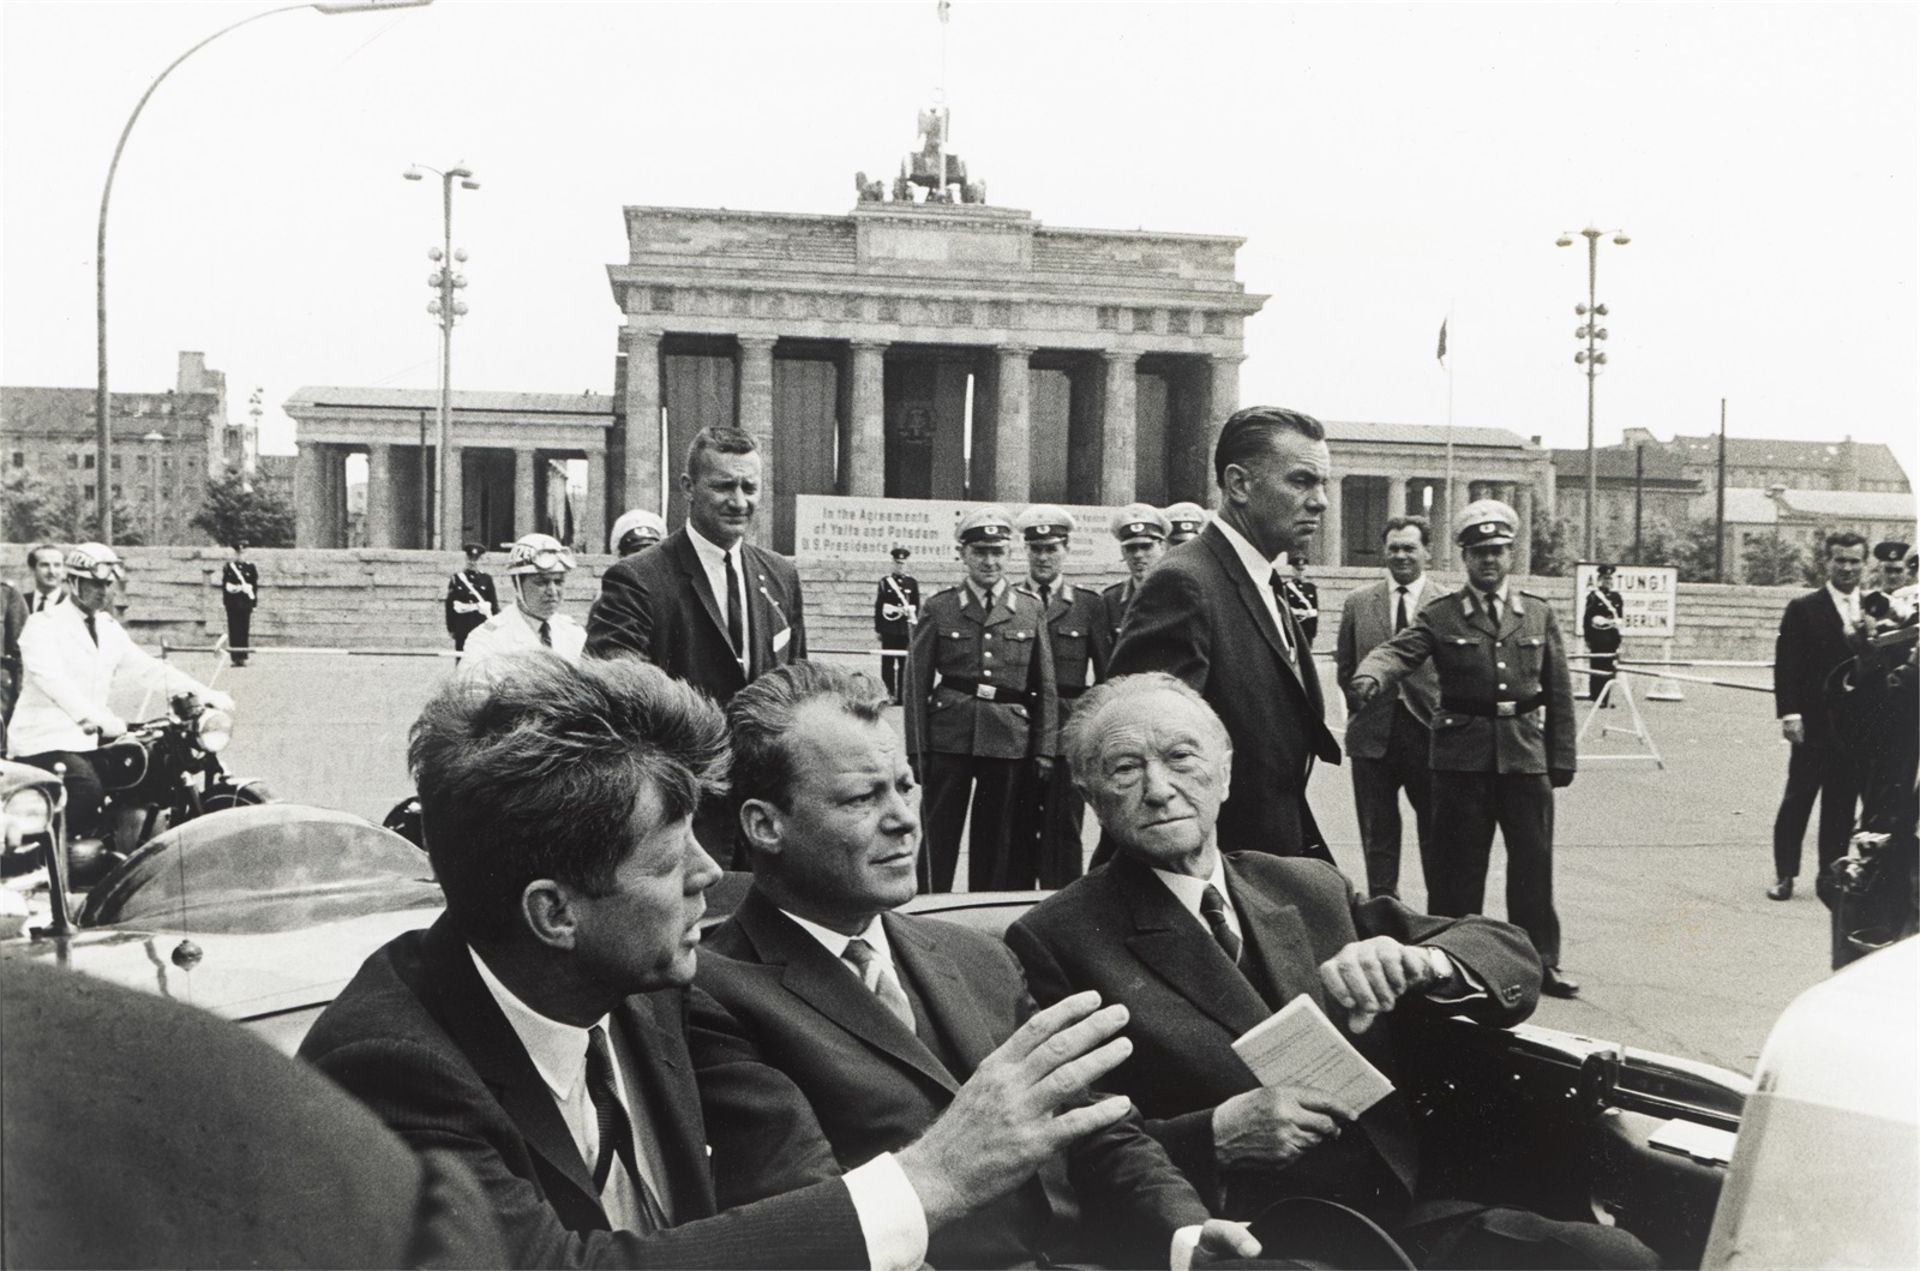 Will McBride. „John F. Kennedy, Willy Brandt, Konrad Adenauer vorm Brandenburger Tor, Berlin“. 1963